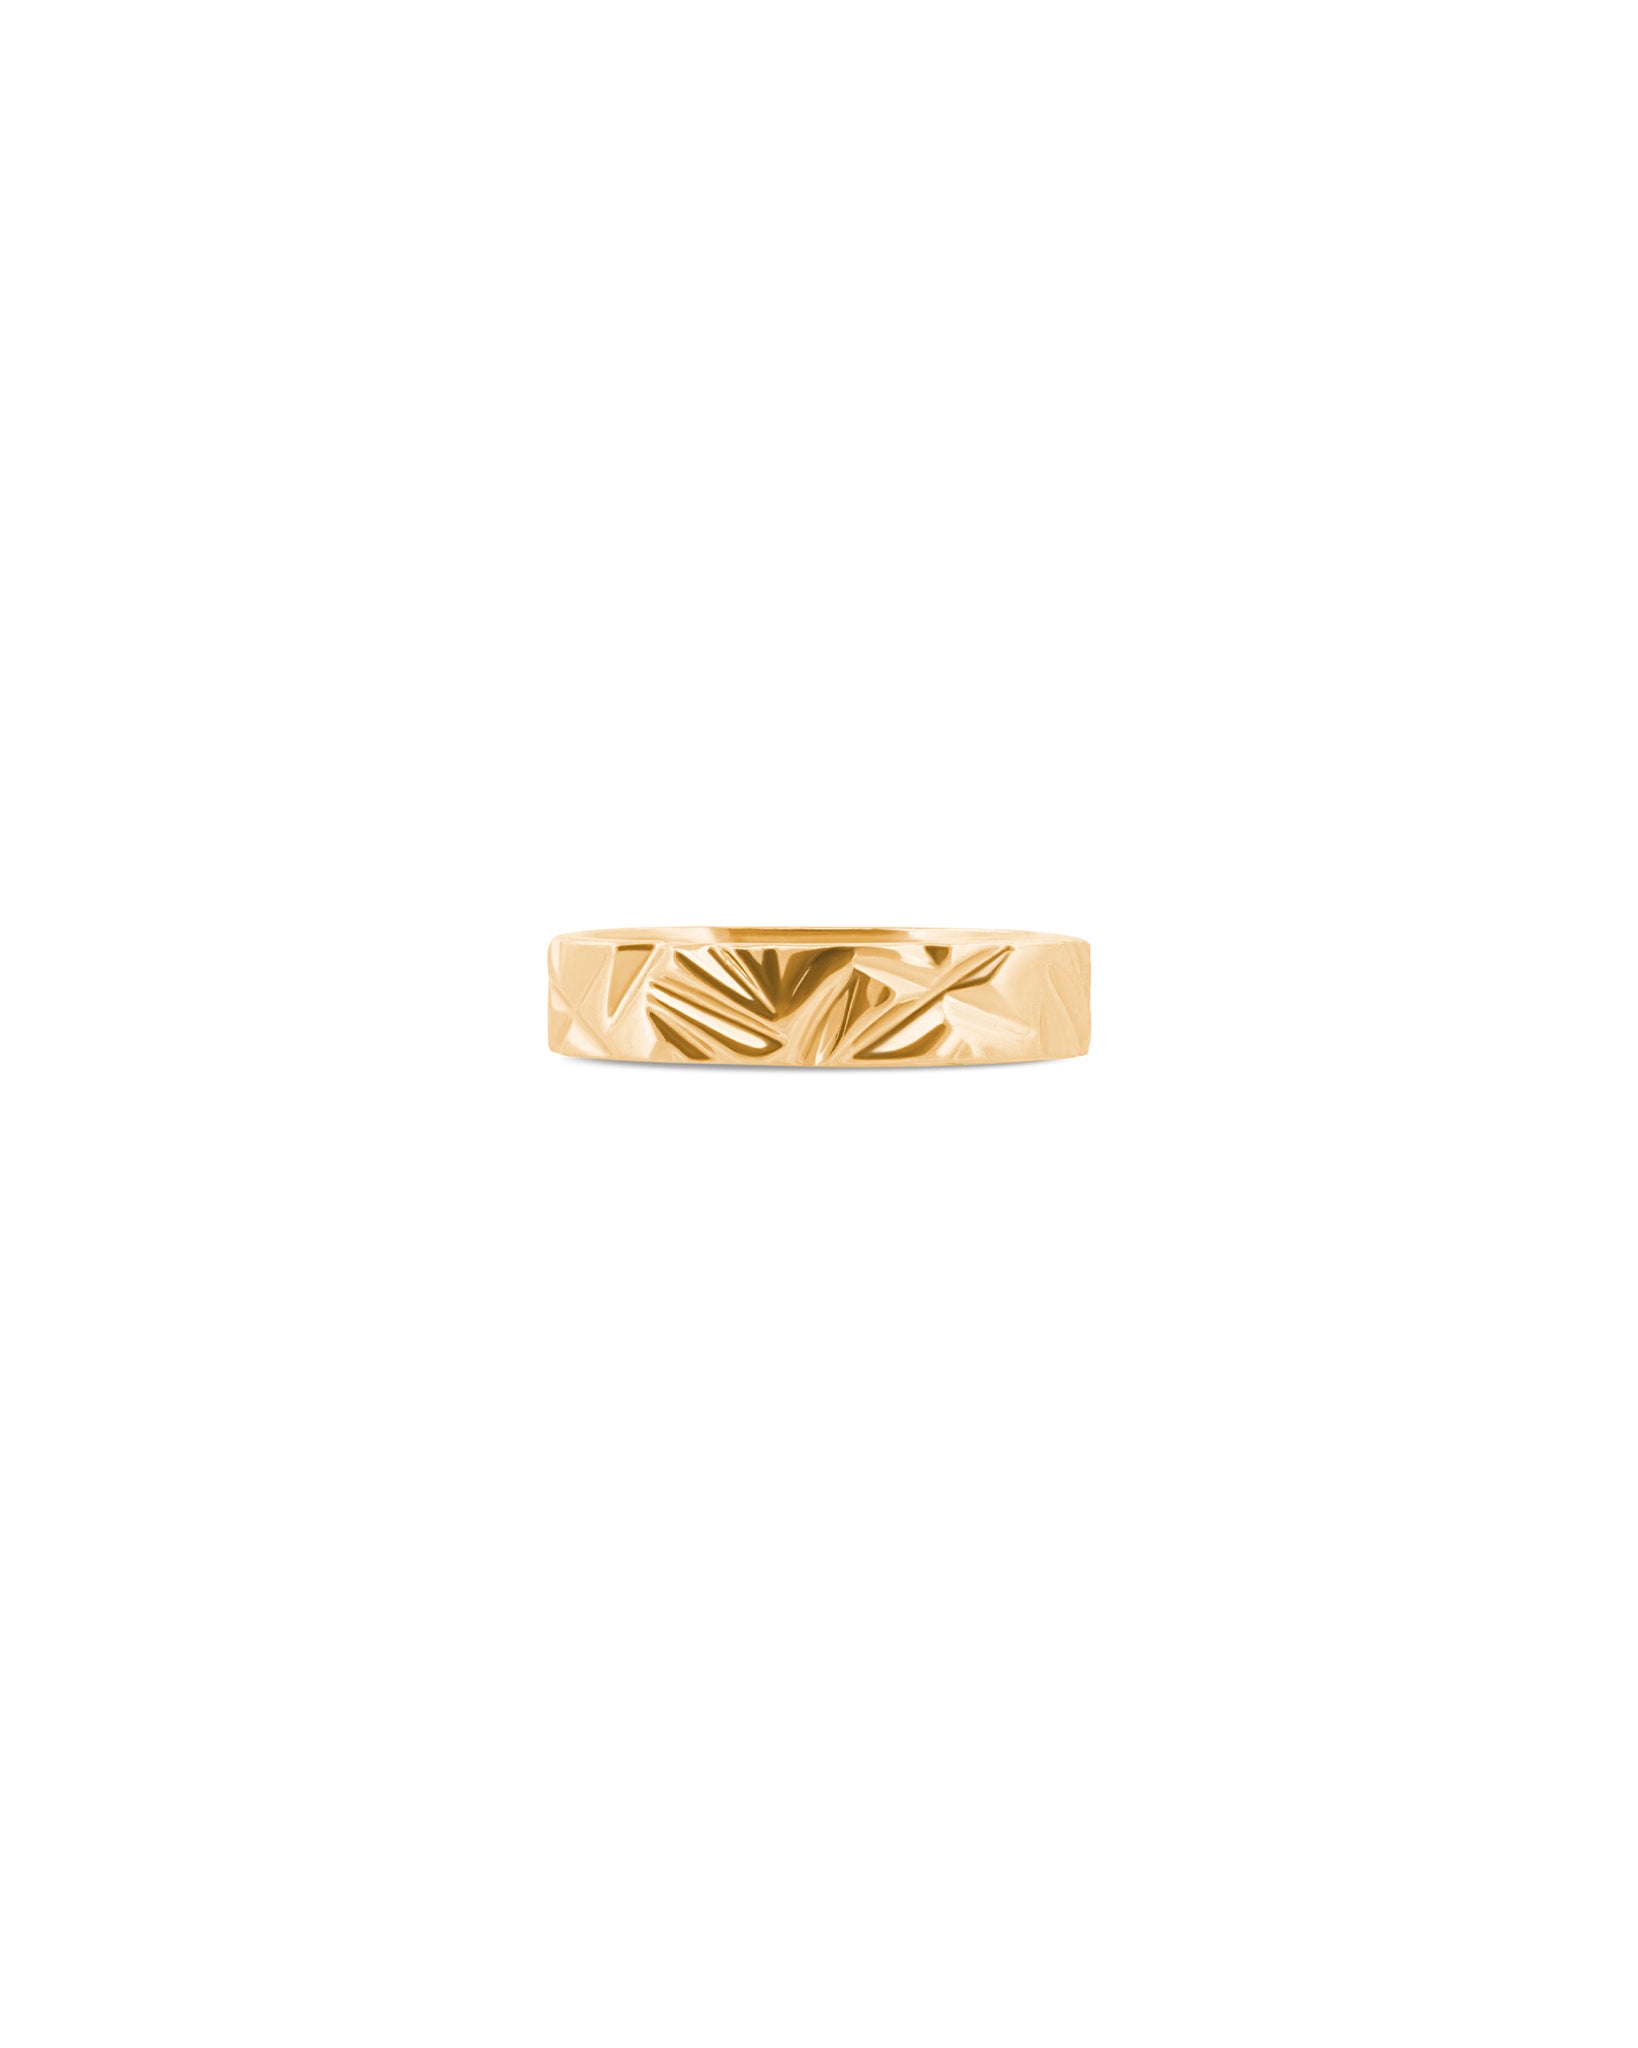 MIRROR Gold Ring Midi